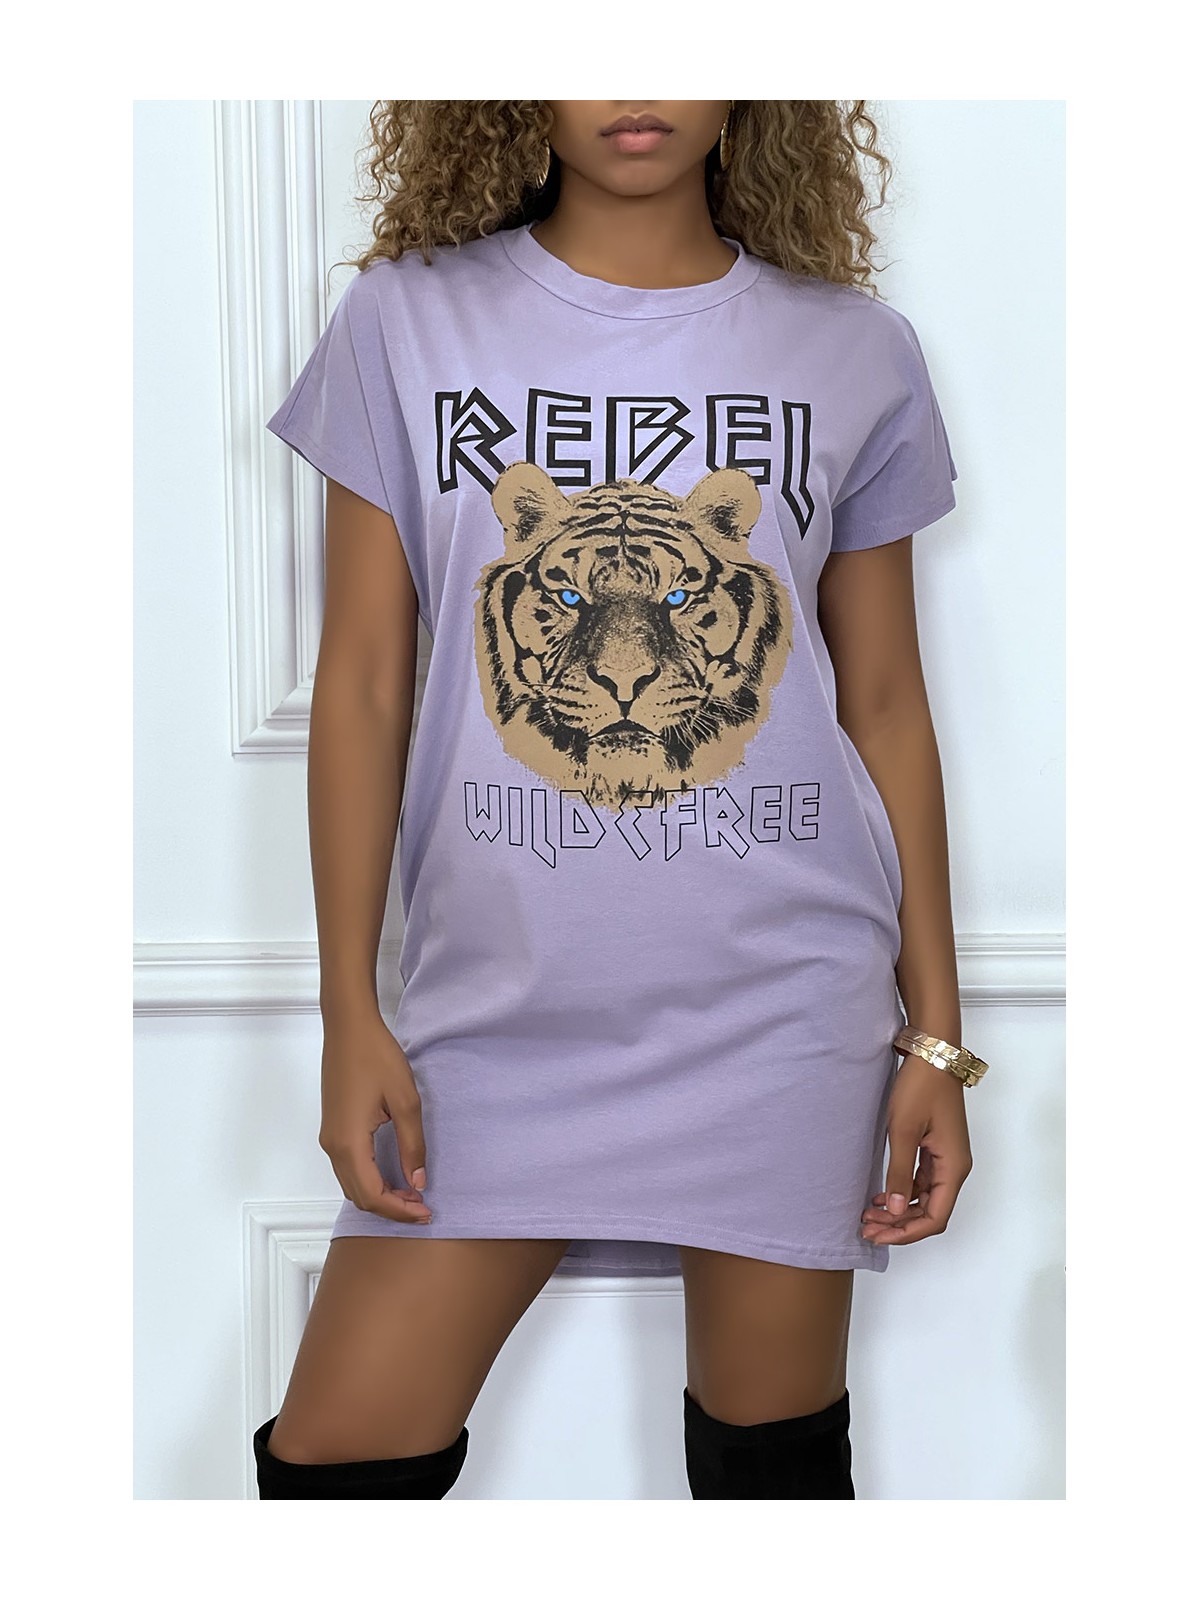 Robe t-shirt lila avec poches et écriture REBEL avec dessin de lion - 3